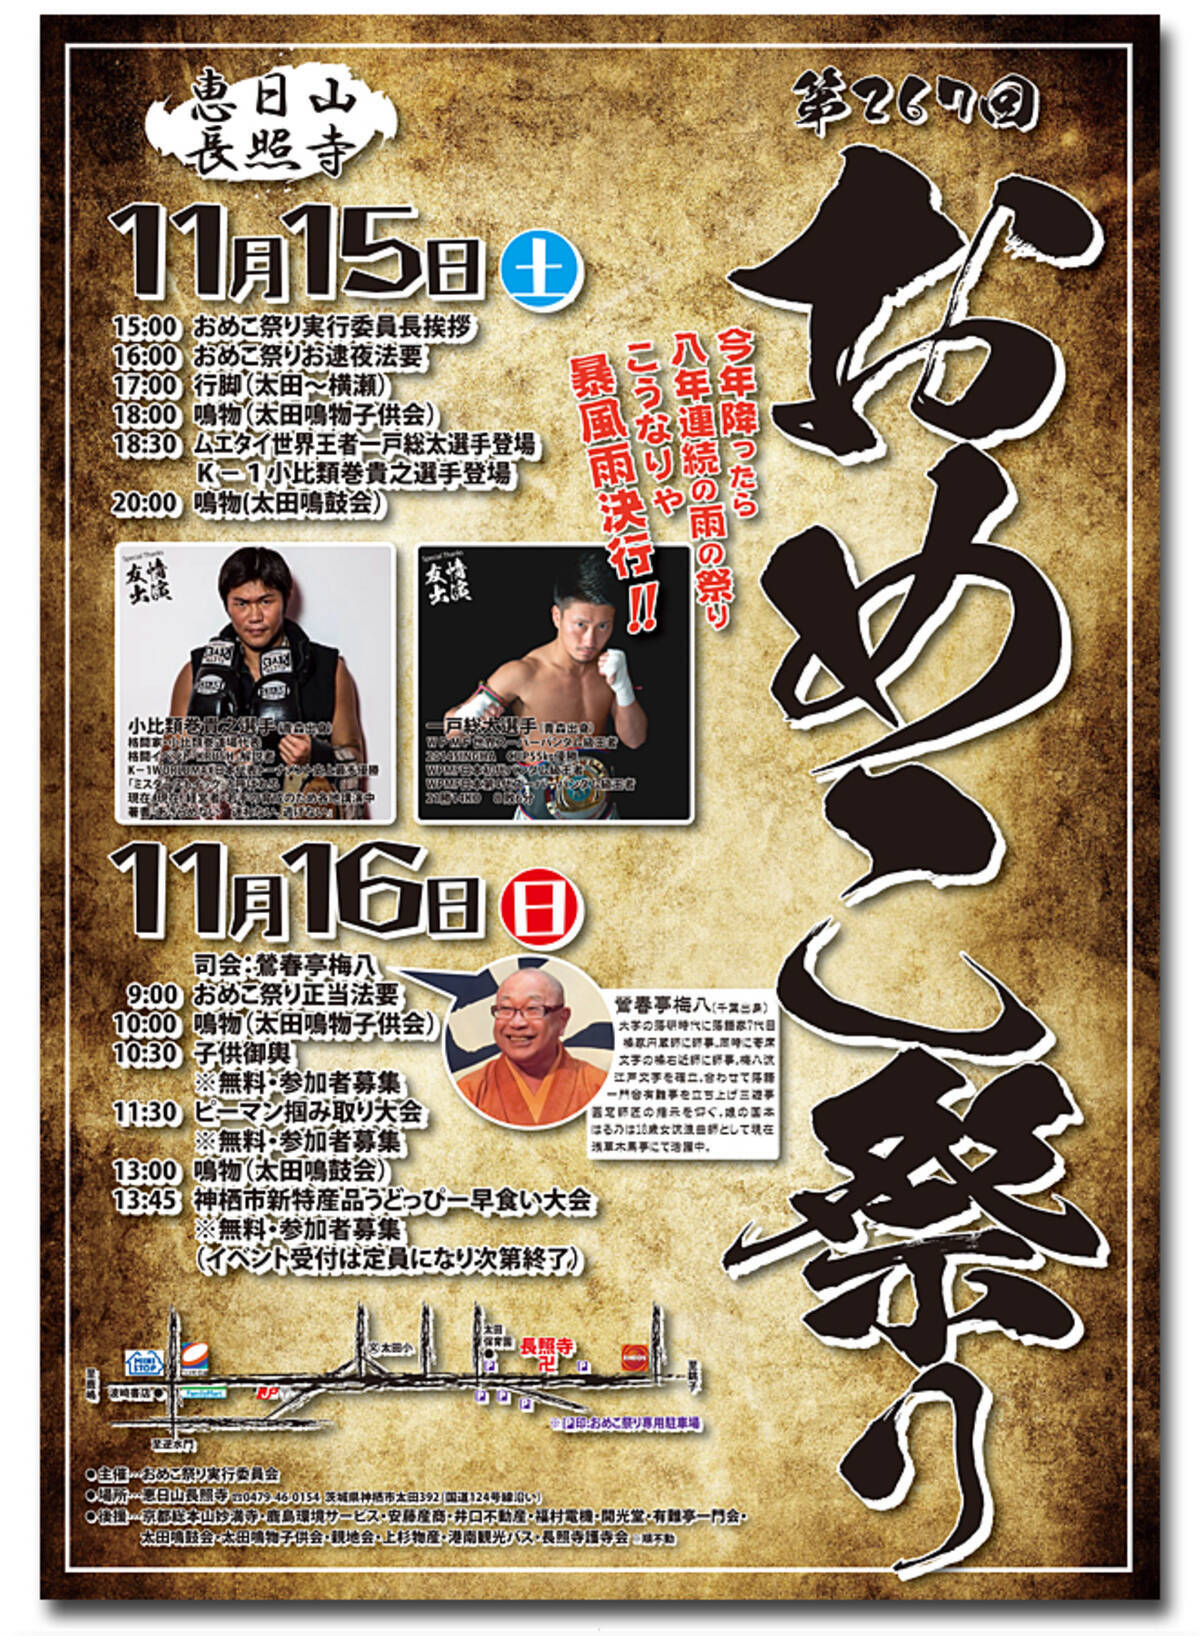 男子必見 茨城県で おめこ祭り が11月15 16日に開催 K 1の小比類巻選手も登場するぞ 14年11月6日 エキサイトニュース